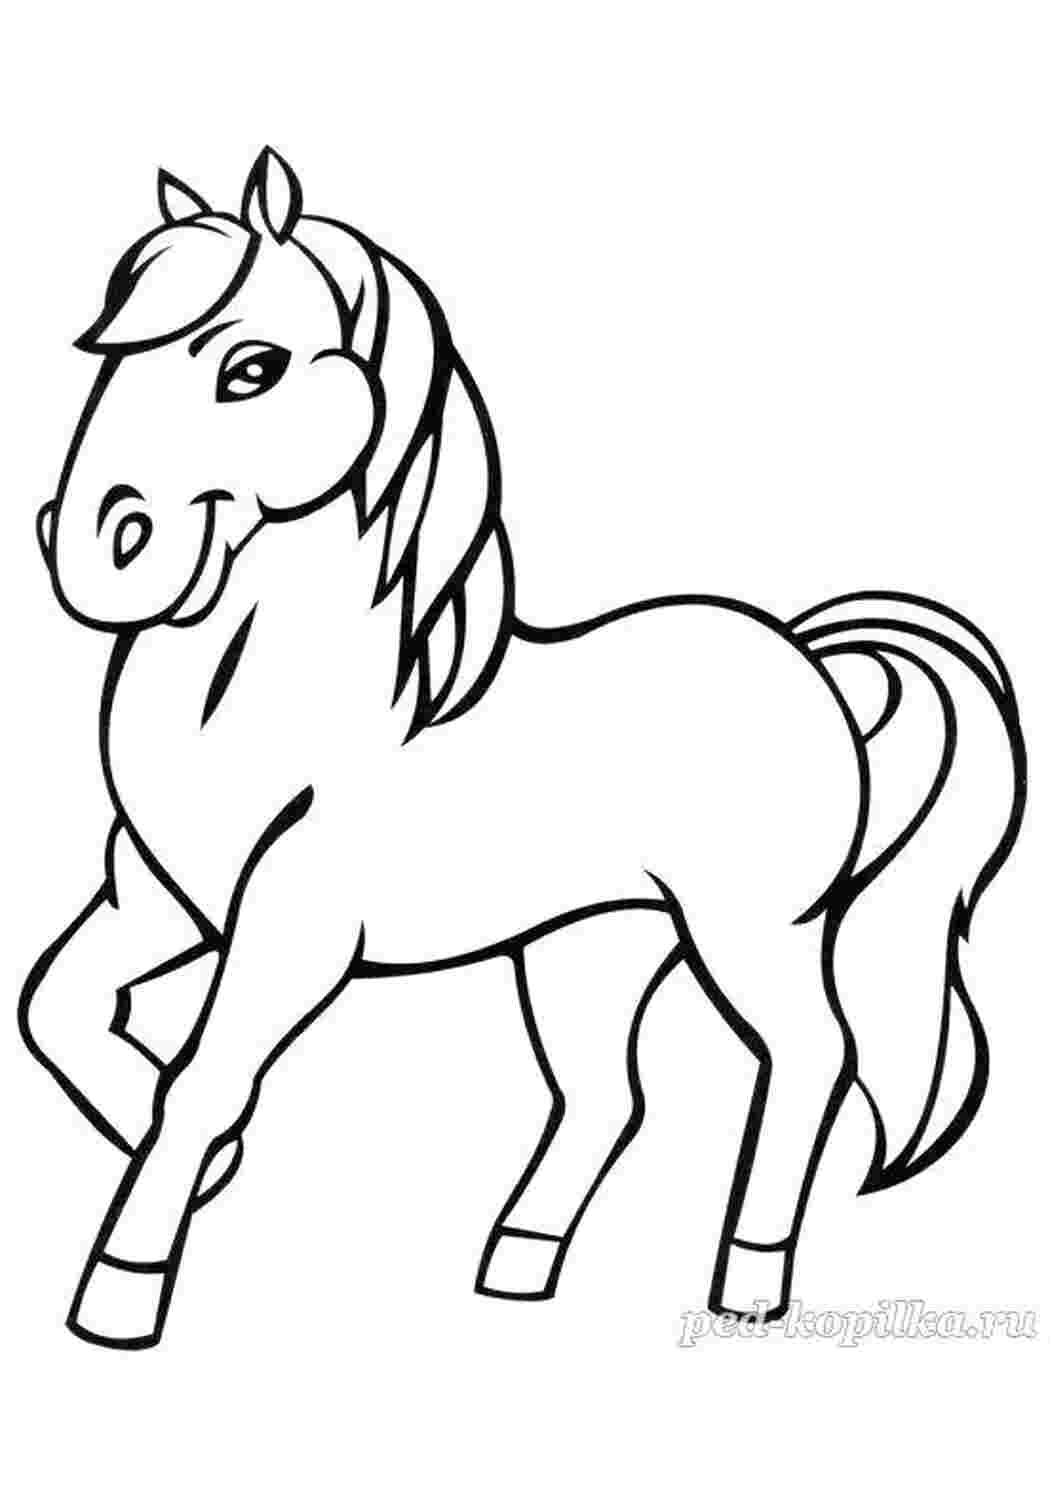 Раскраски Лошадь. Раскраска Домашние животные Лошадь